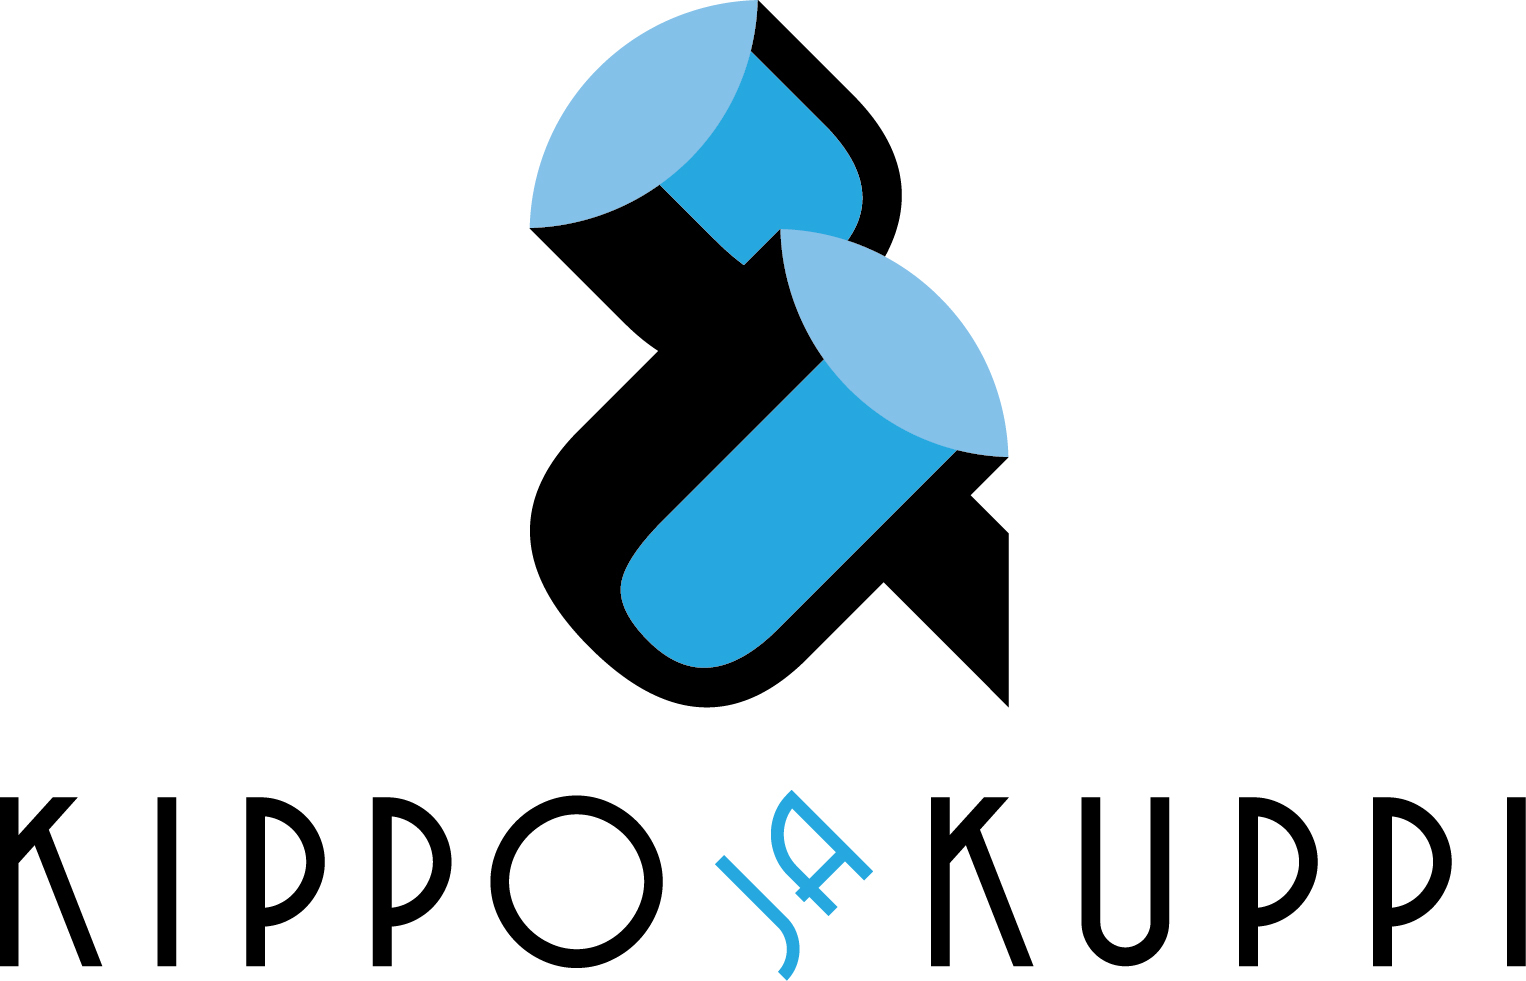 KippoKuppi_logo_horizontal_RGB